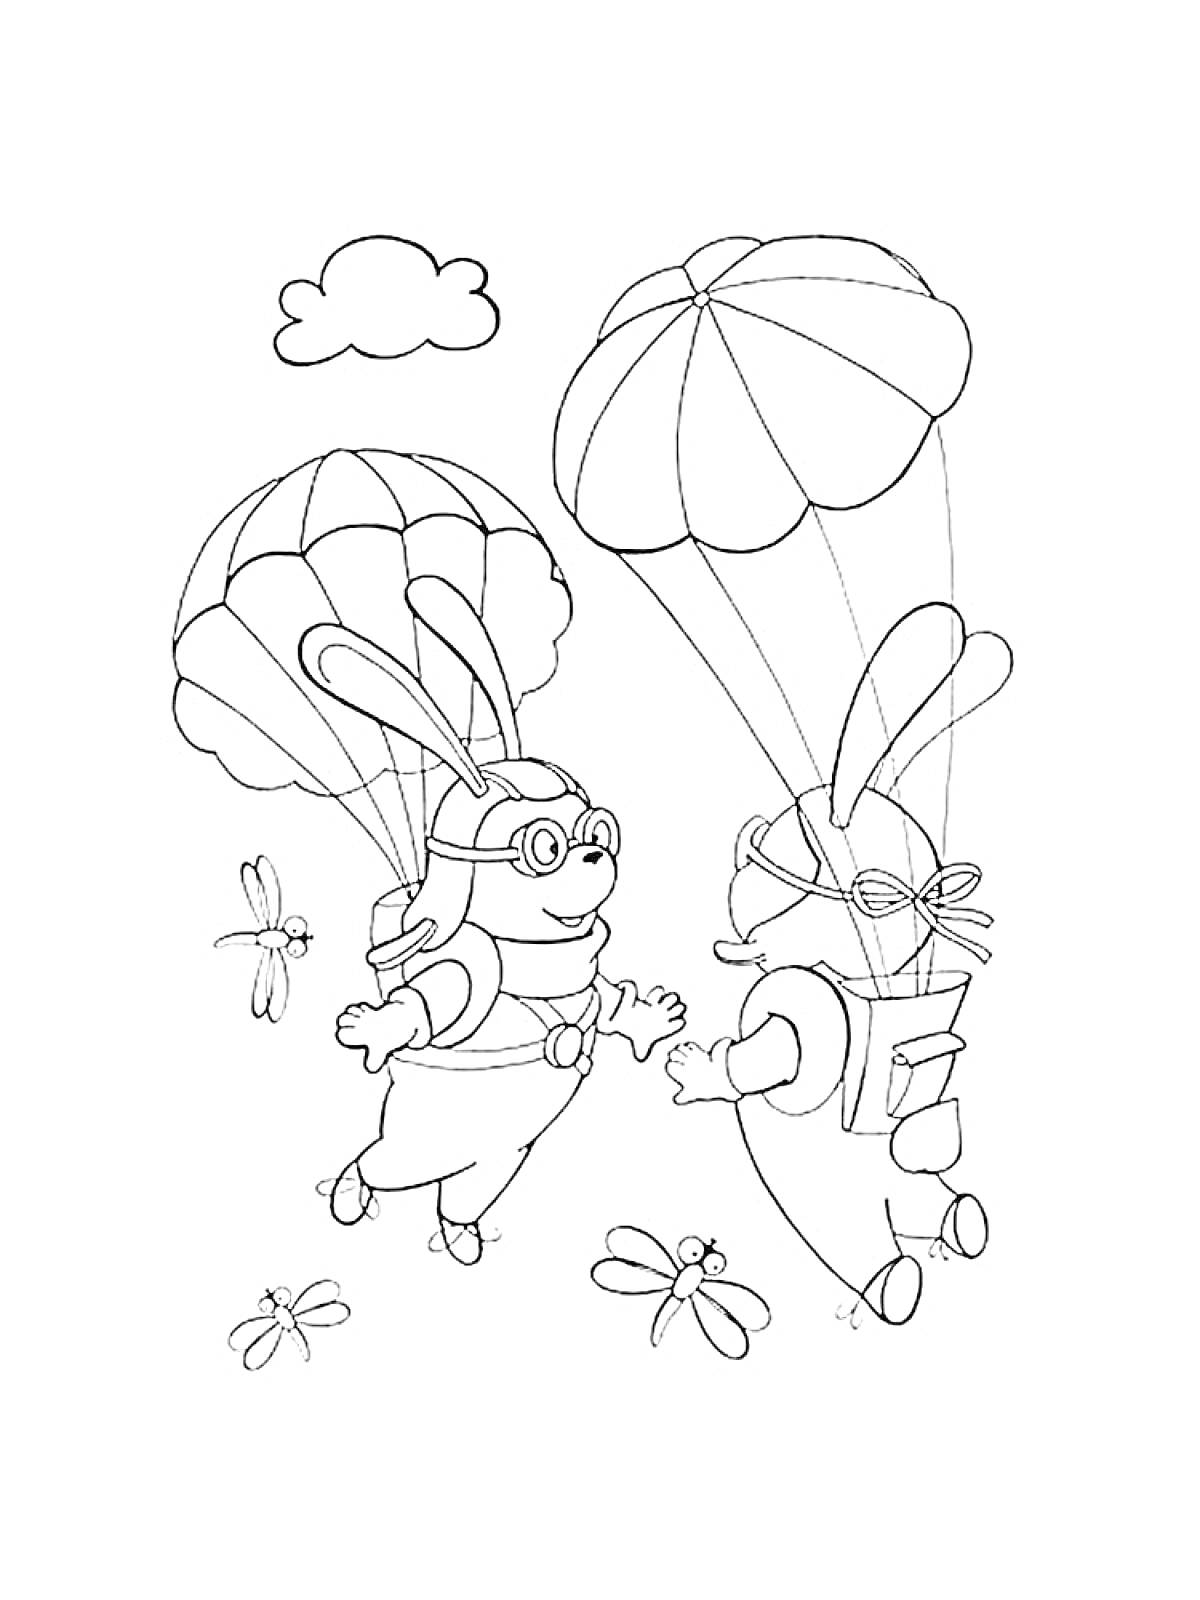 Два парашютиста-кролика с парашютами в небе с облаком и стрекозами